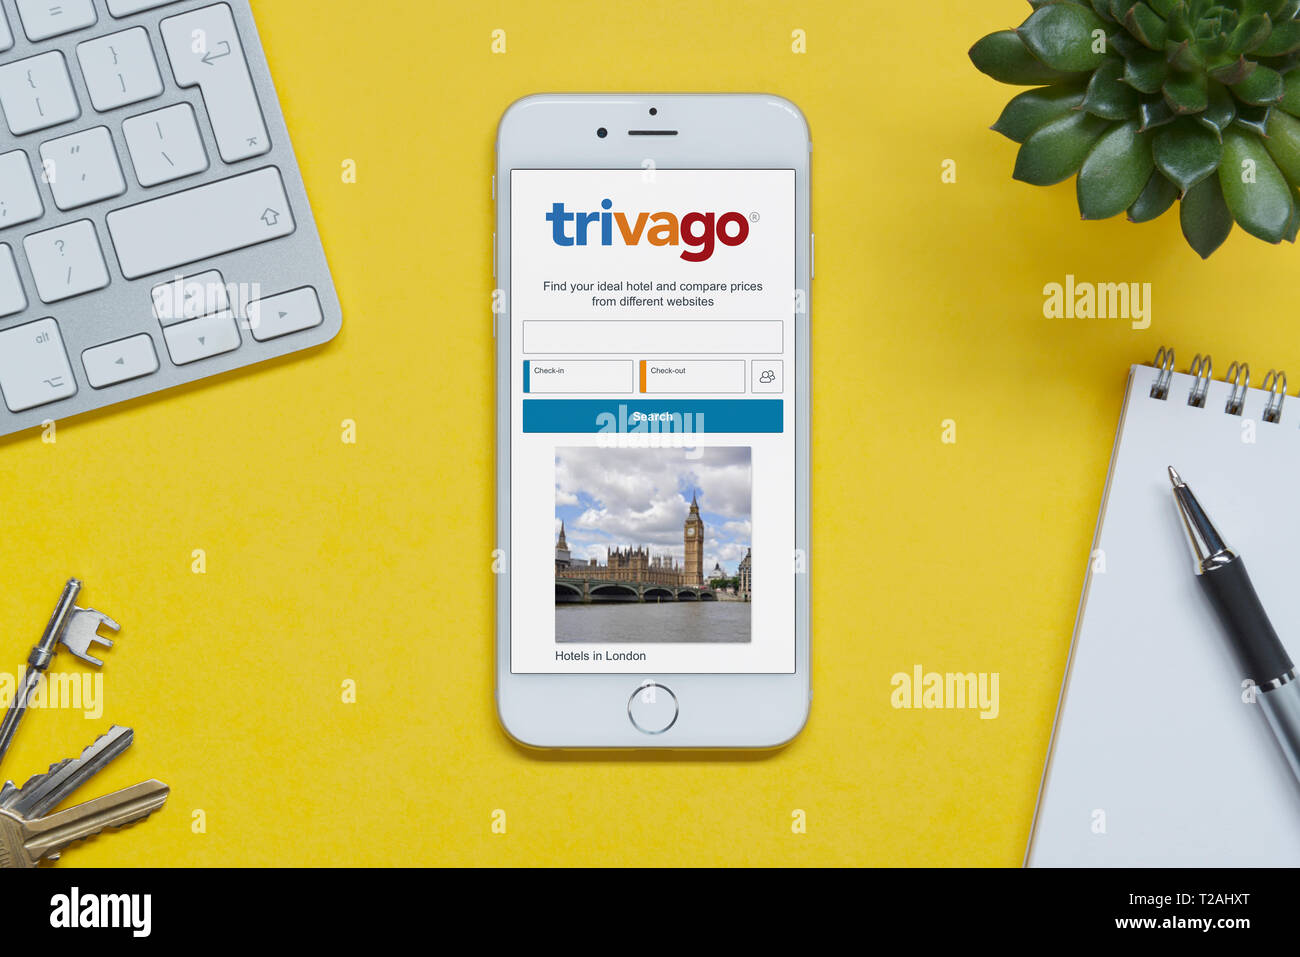 Un iPhone montrant le site Trivago repose sur un fond jaune table avec un clavier, les touches, le bloc-notes et des plantes (usage éditorial uniquement). Banque D'Images